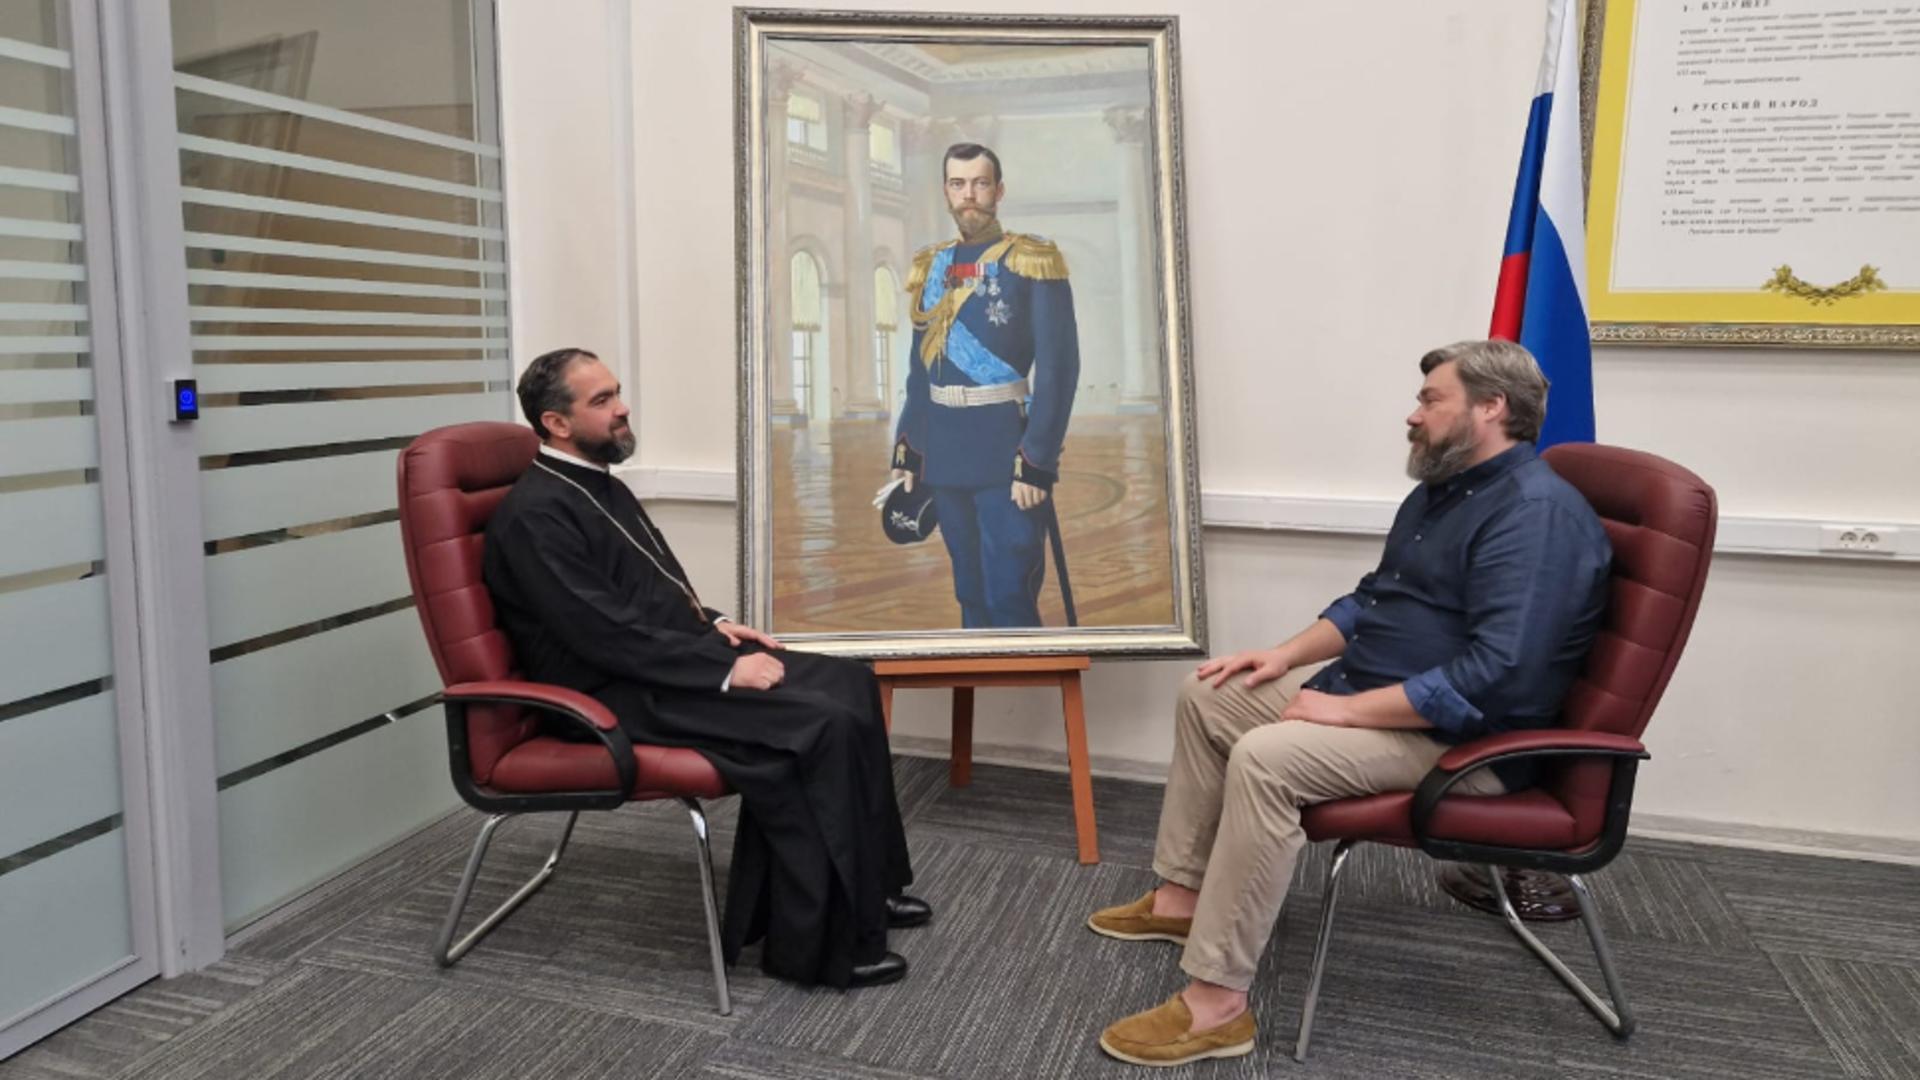 Întâlnirile spectaculoase ale preotului Ciprian Mega la Moscova: fostul președinte Medvedev, filantropul Konstantin Malofeev, președintele Putin